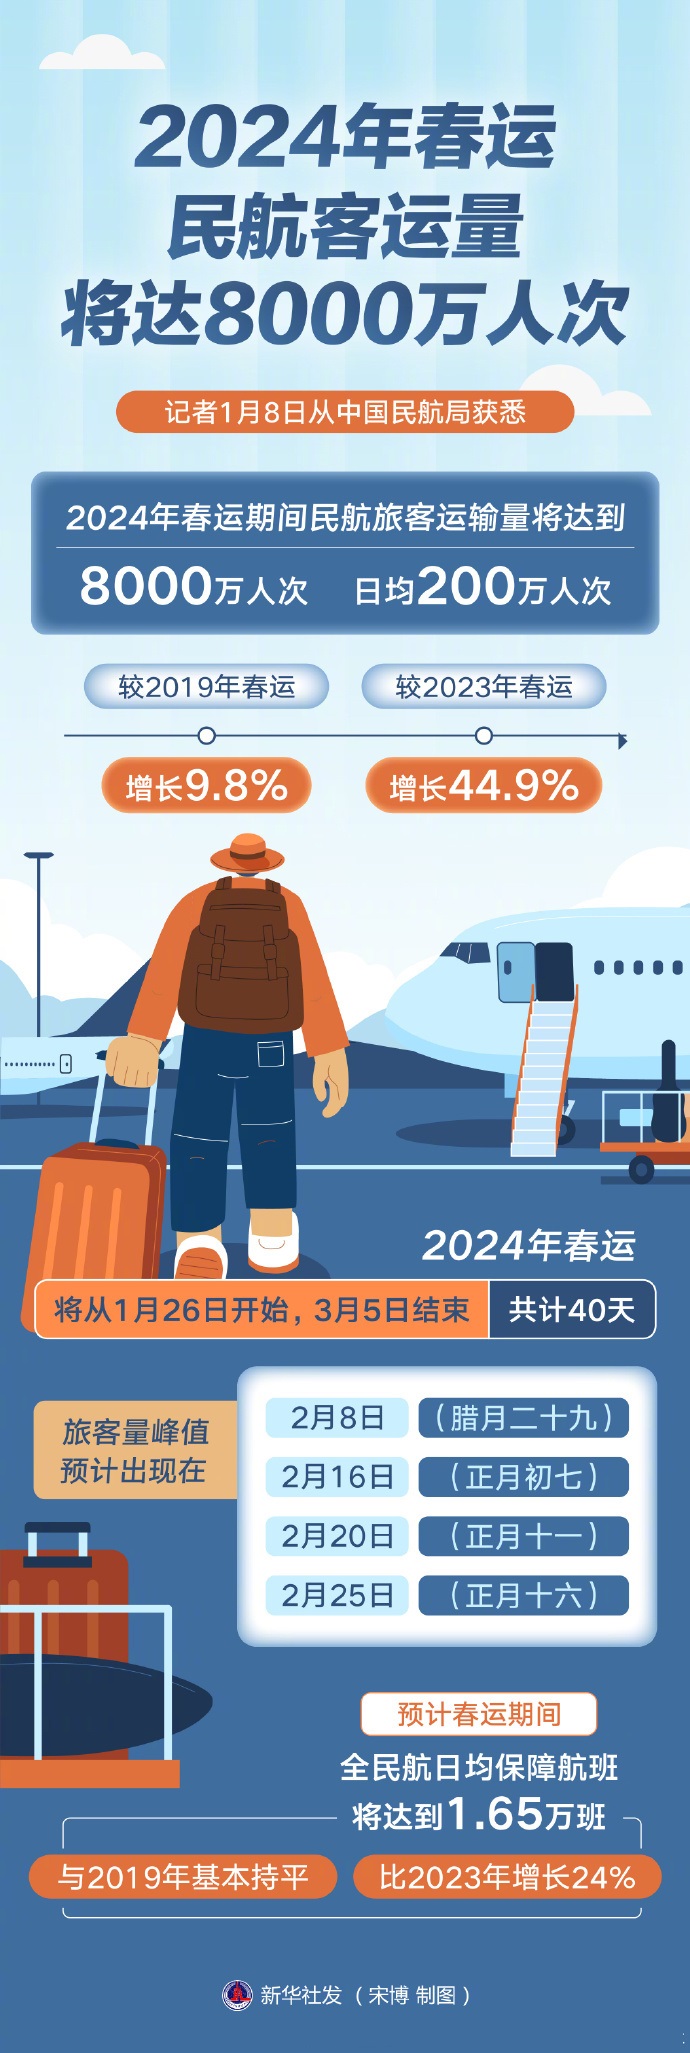 2024年春运民航客运量将达8000万人次